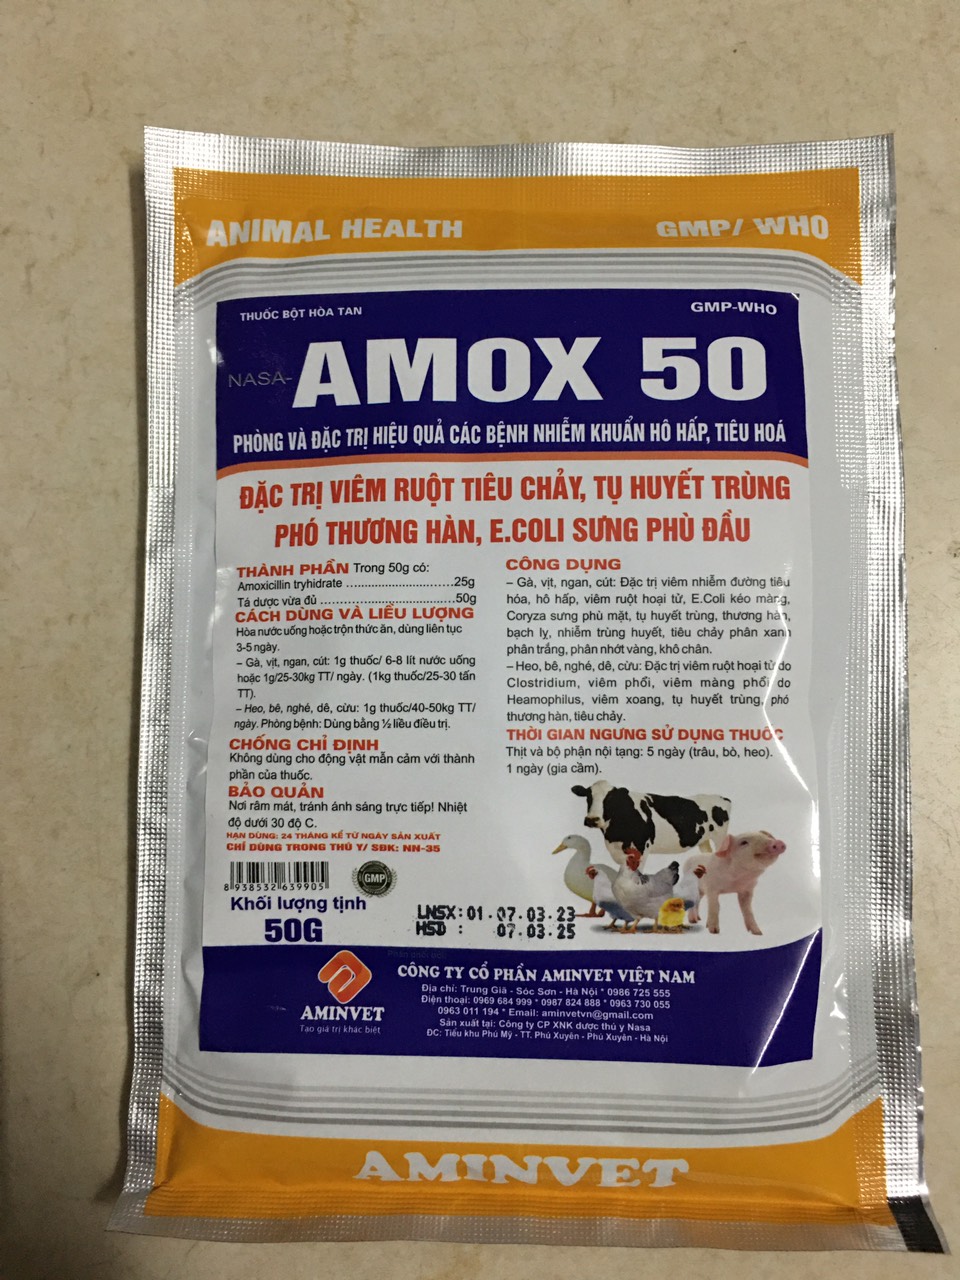 Amox 50% aminvet (50gam) viêm ruột, tiêu chảy, tụ huyết trùng gia súc, gia cầm